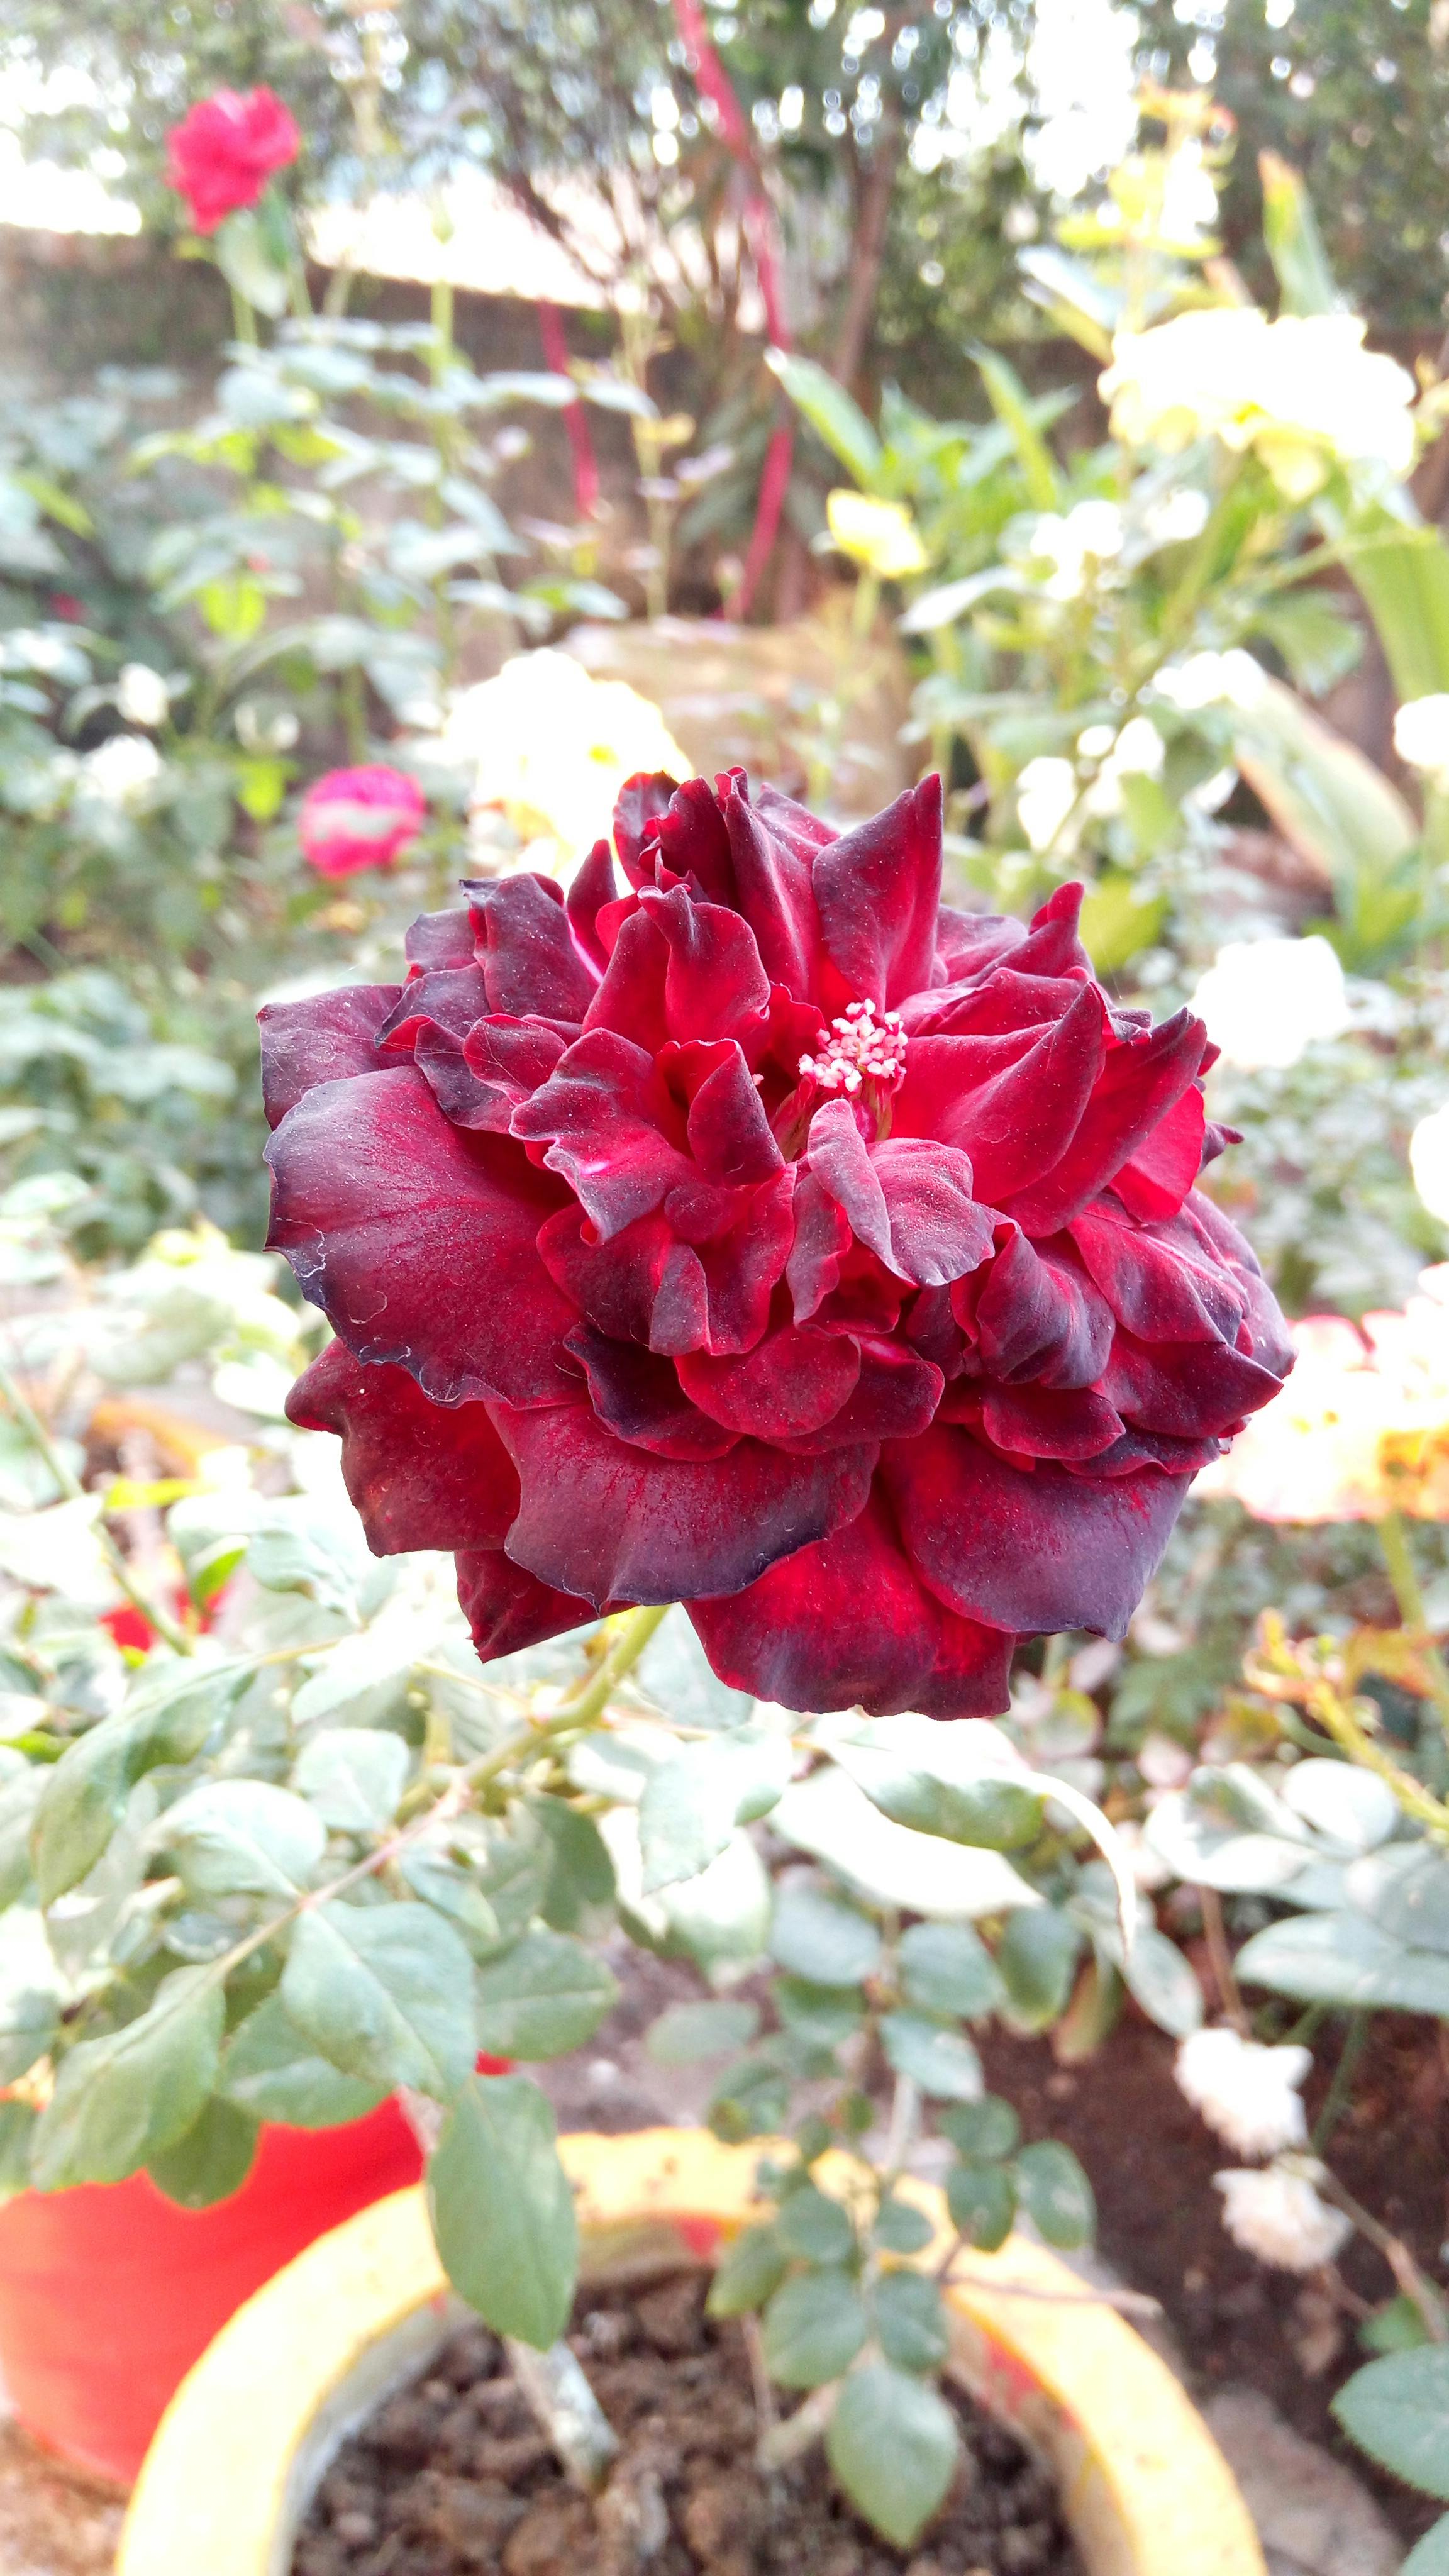 Free stock photo of dark red rose